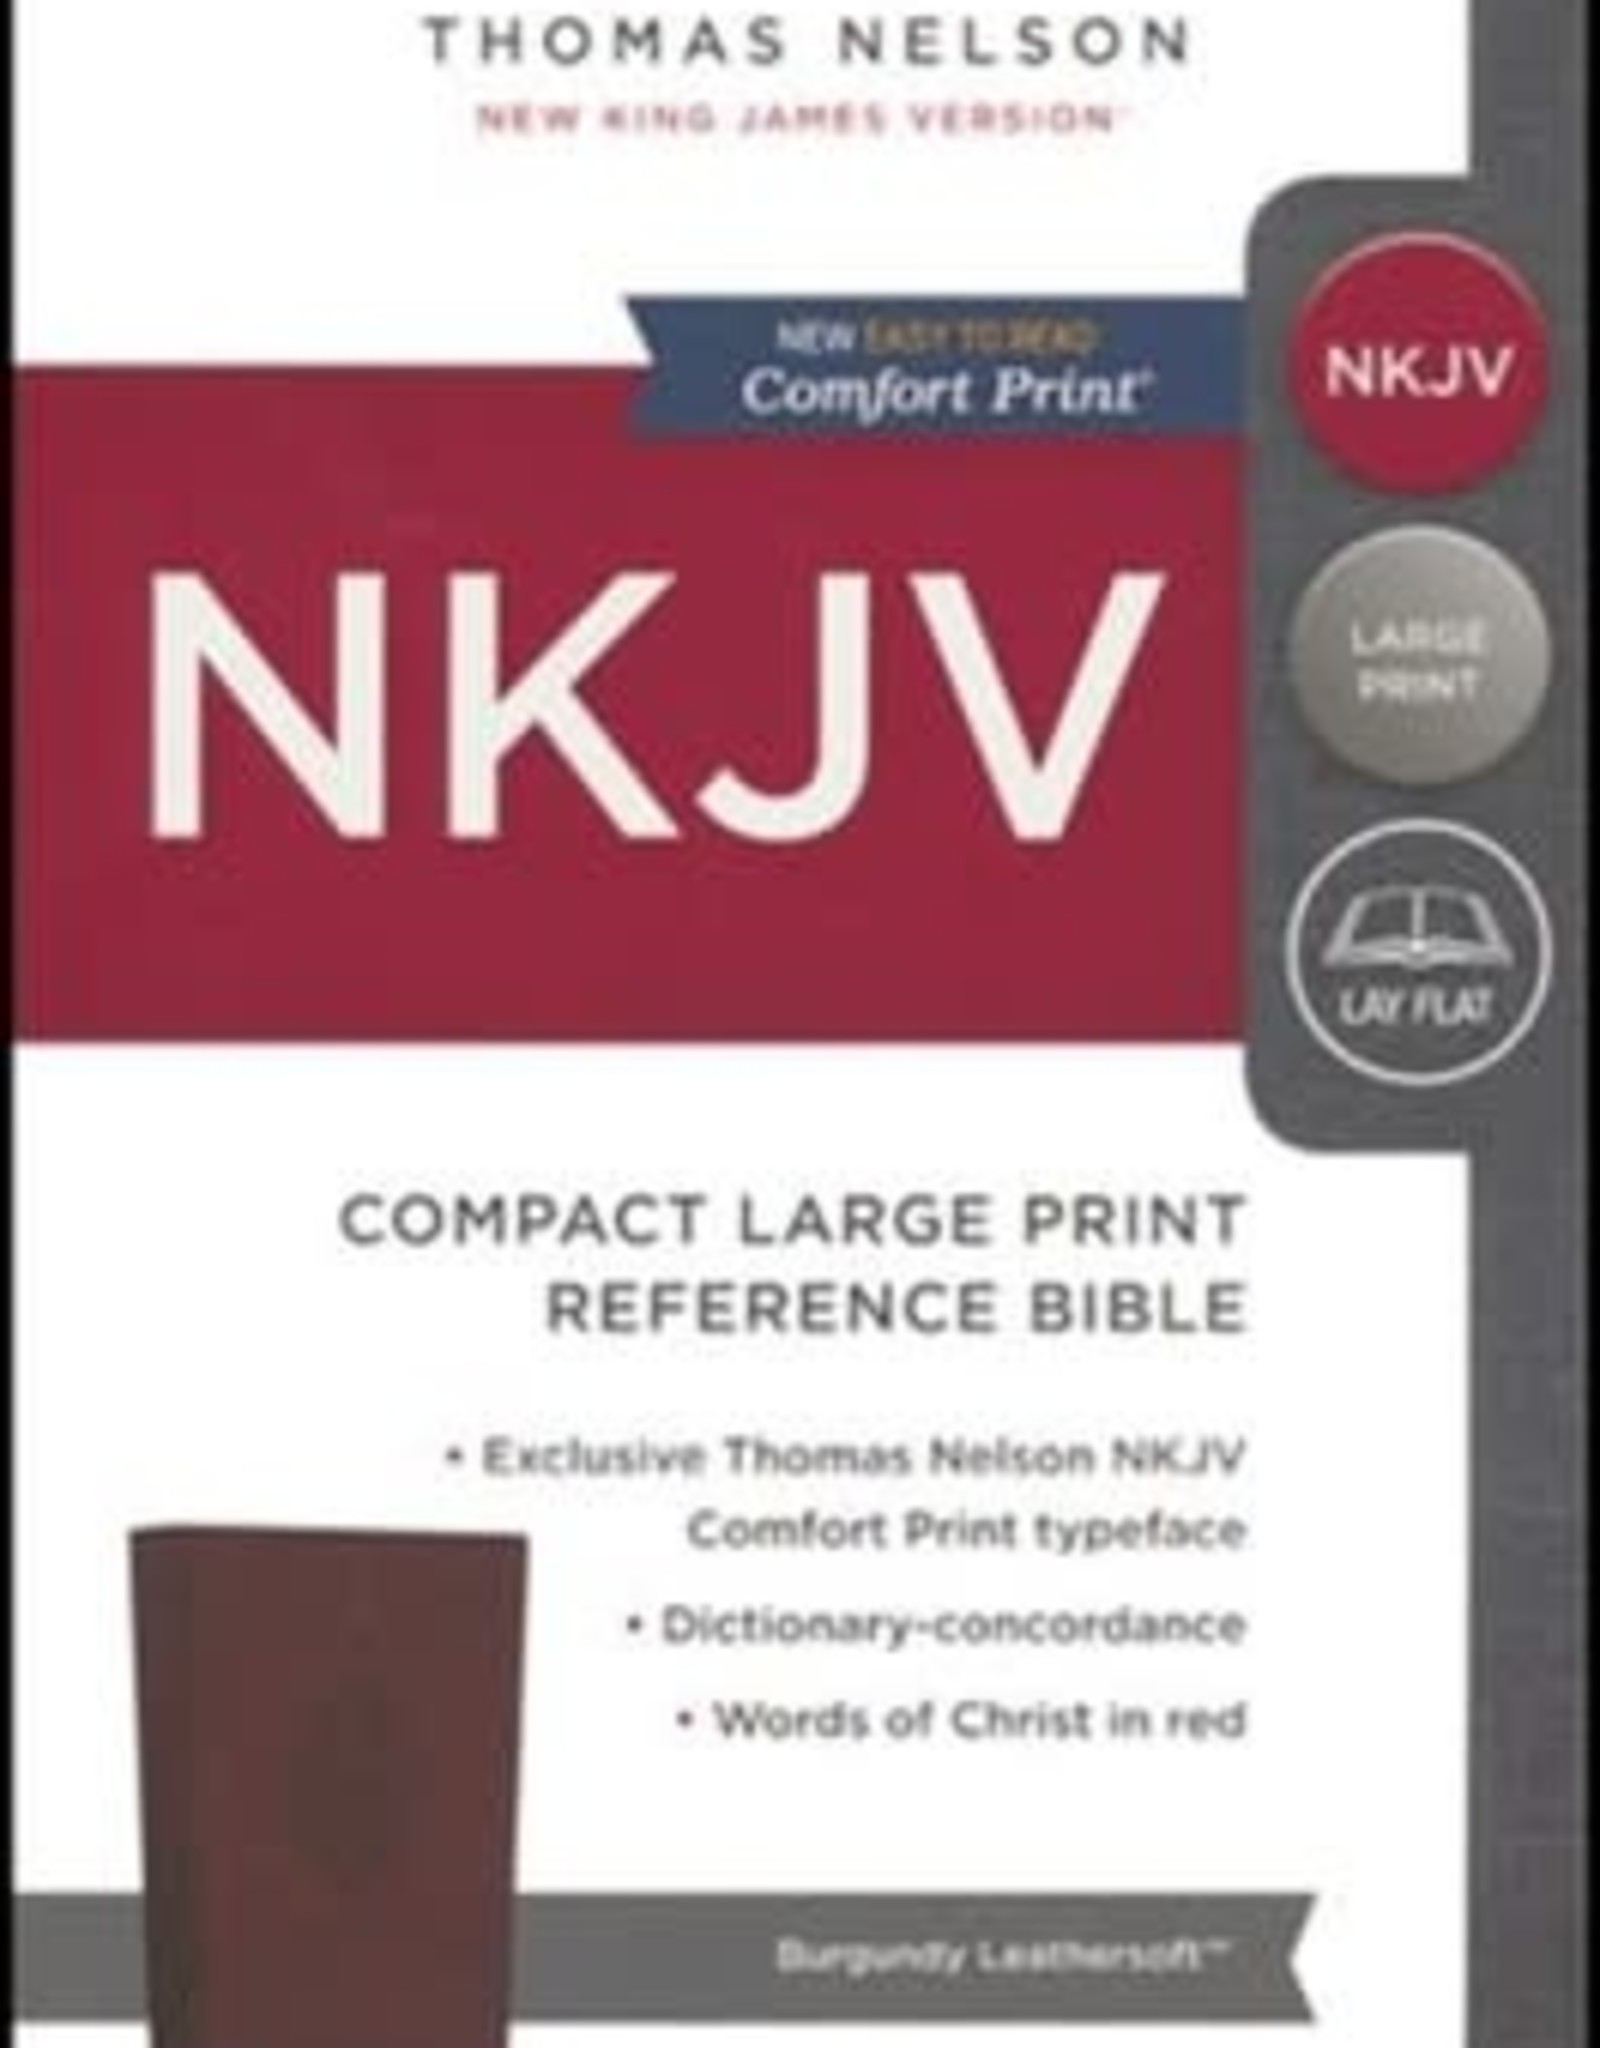 NKJV - Burgundy Leathersoft - Large Print